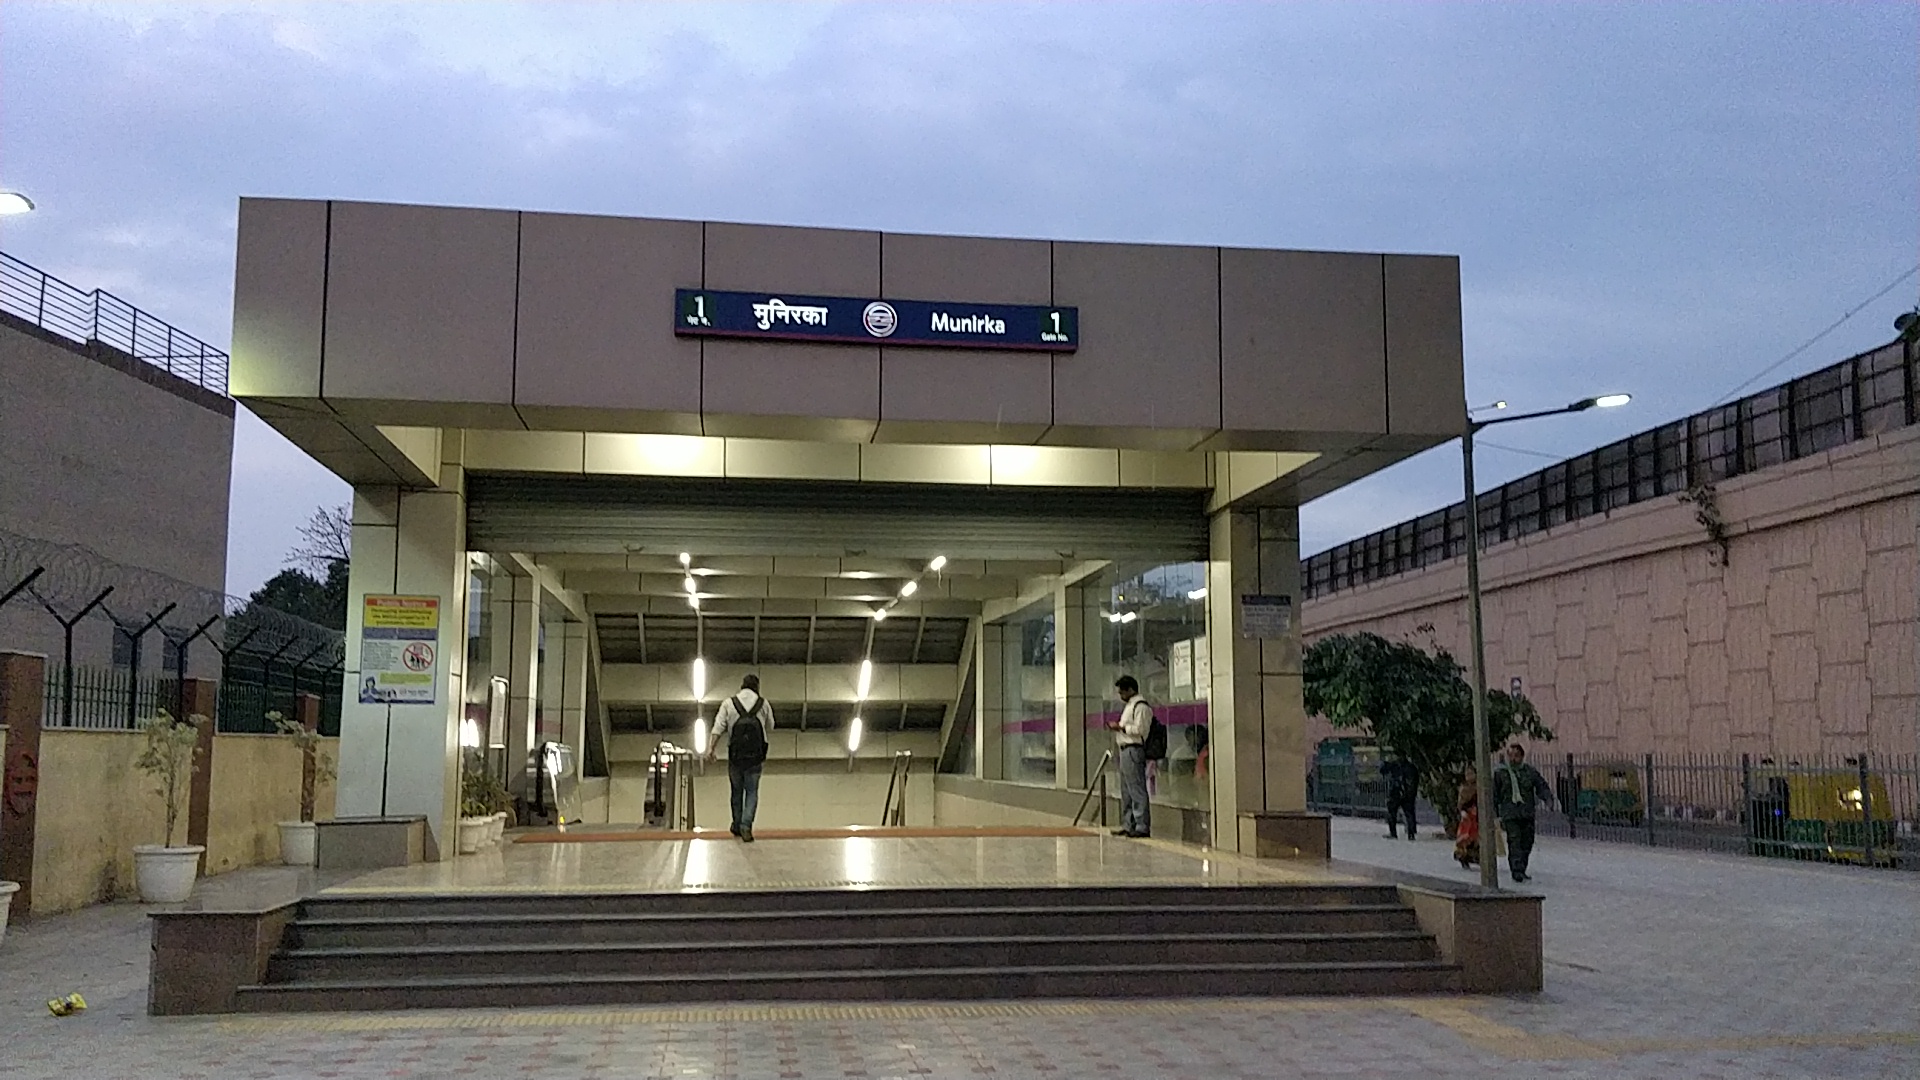 munirka metro station gate no 3